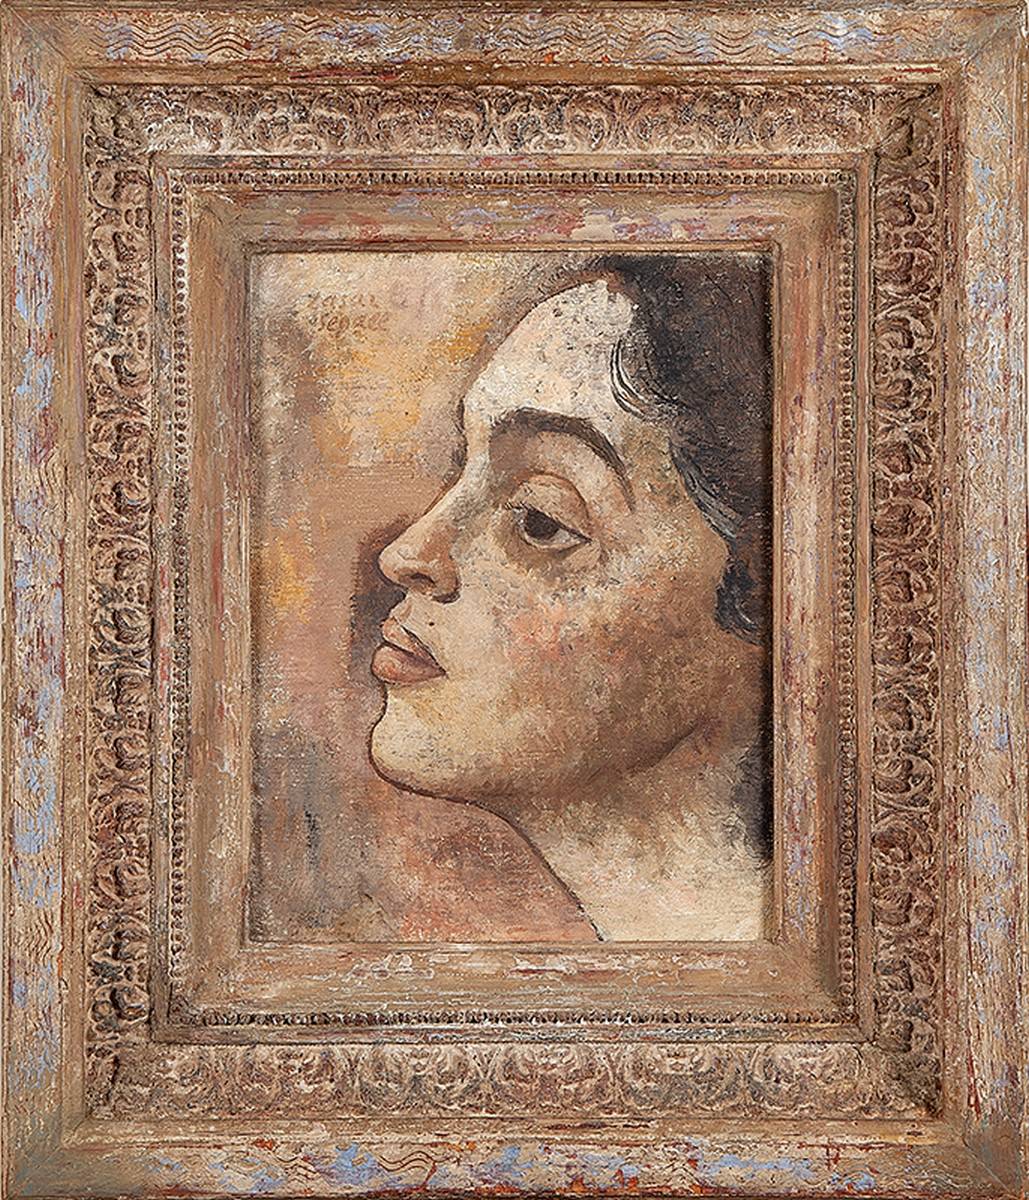 LASAR SEGALL, Retrato de Lucy. Ost, 33 x 40. Assinado no cse e datado de 1936.